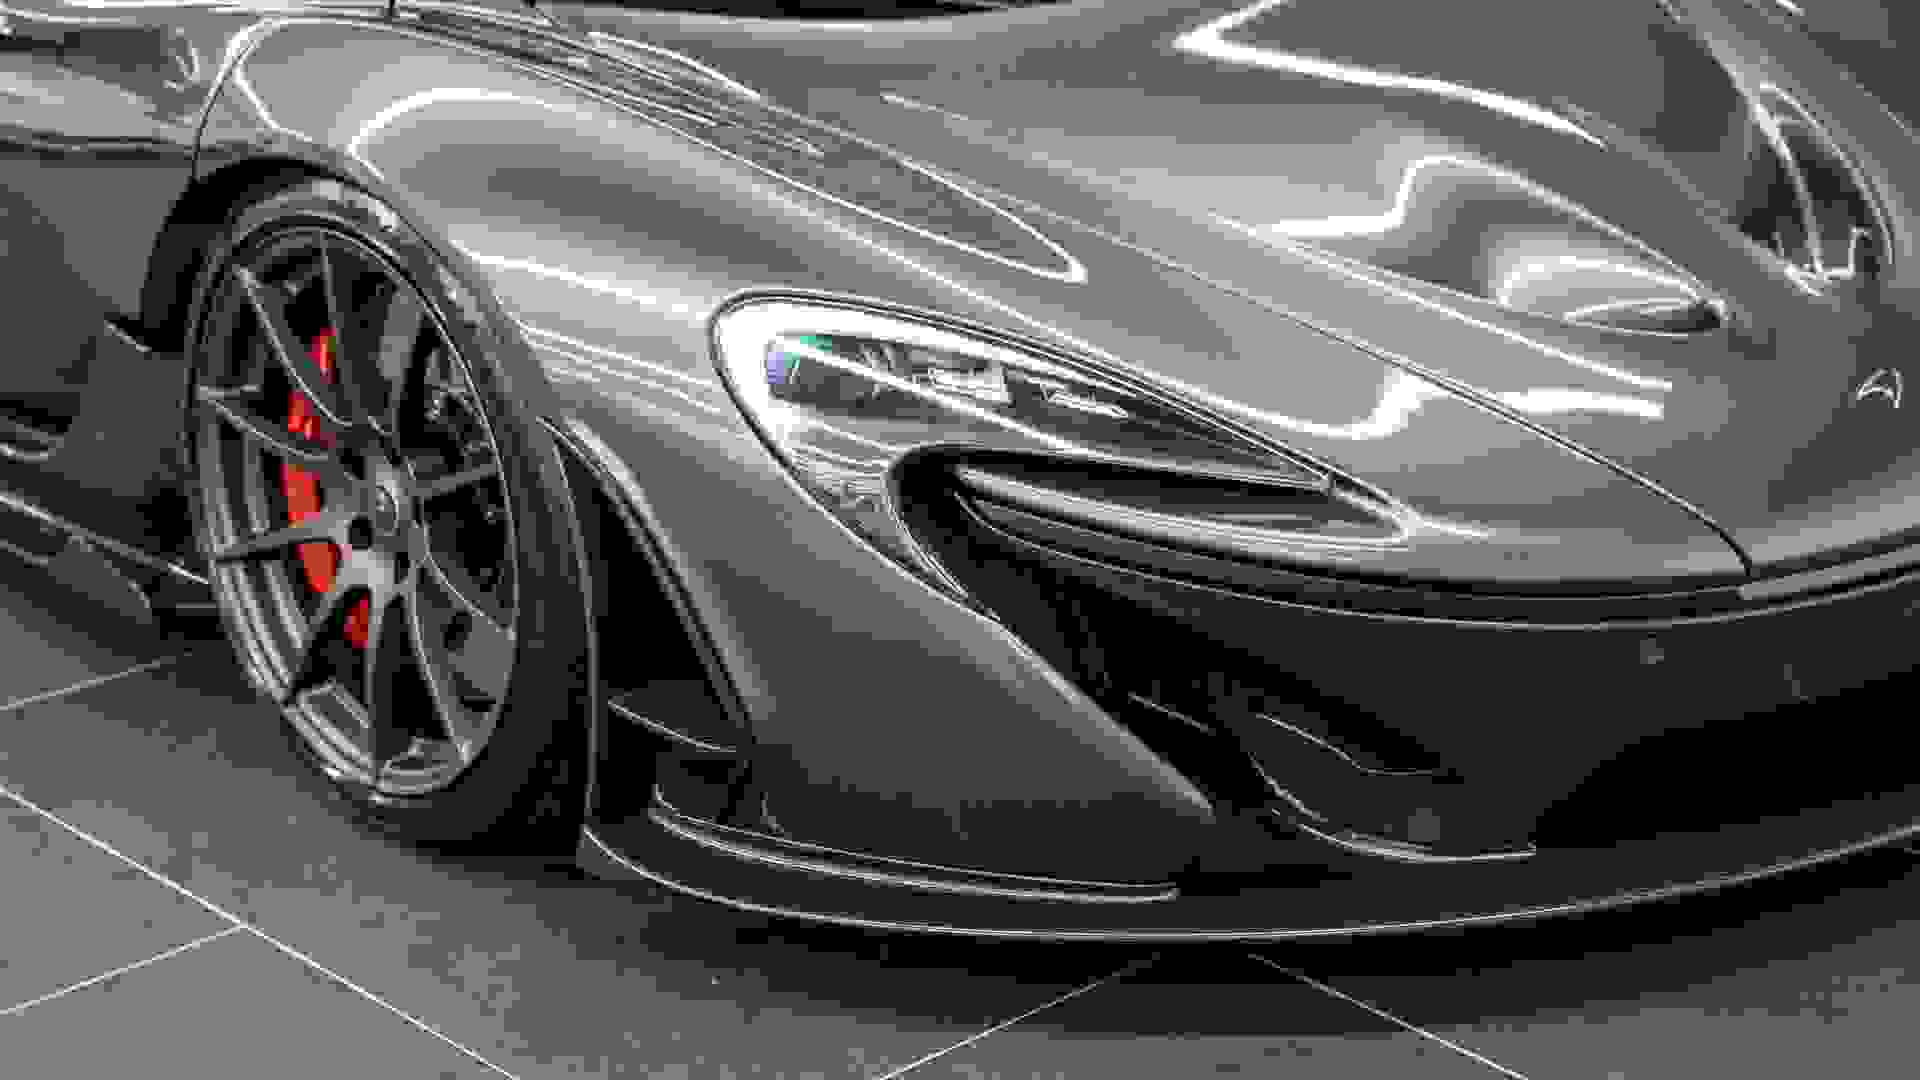 McLaren P1 Photo 905c706c-94b4-4ccc-9f3a-e5a68e54dc3e.jpg